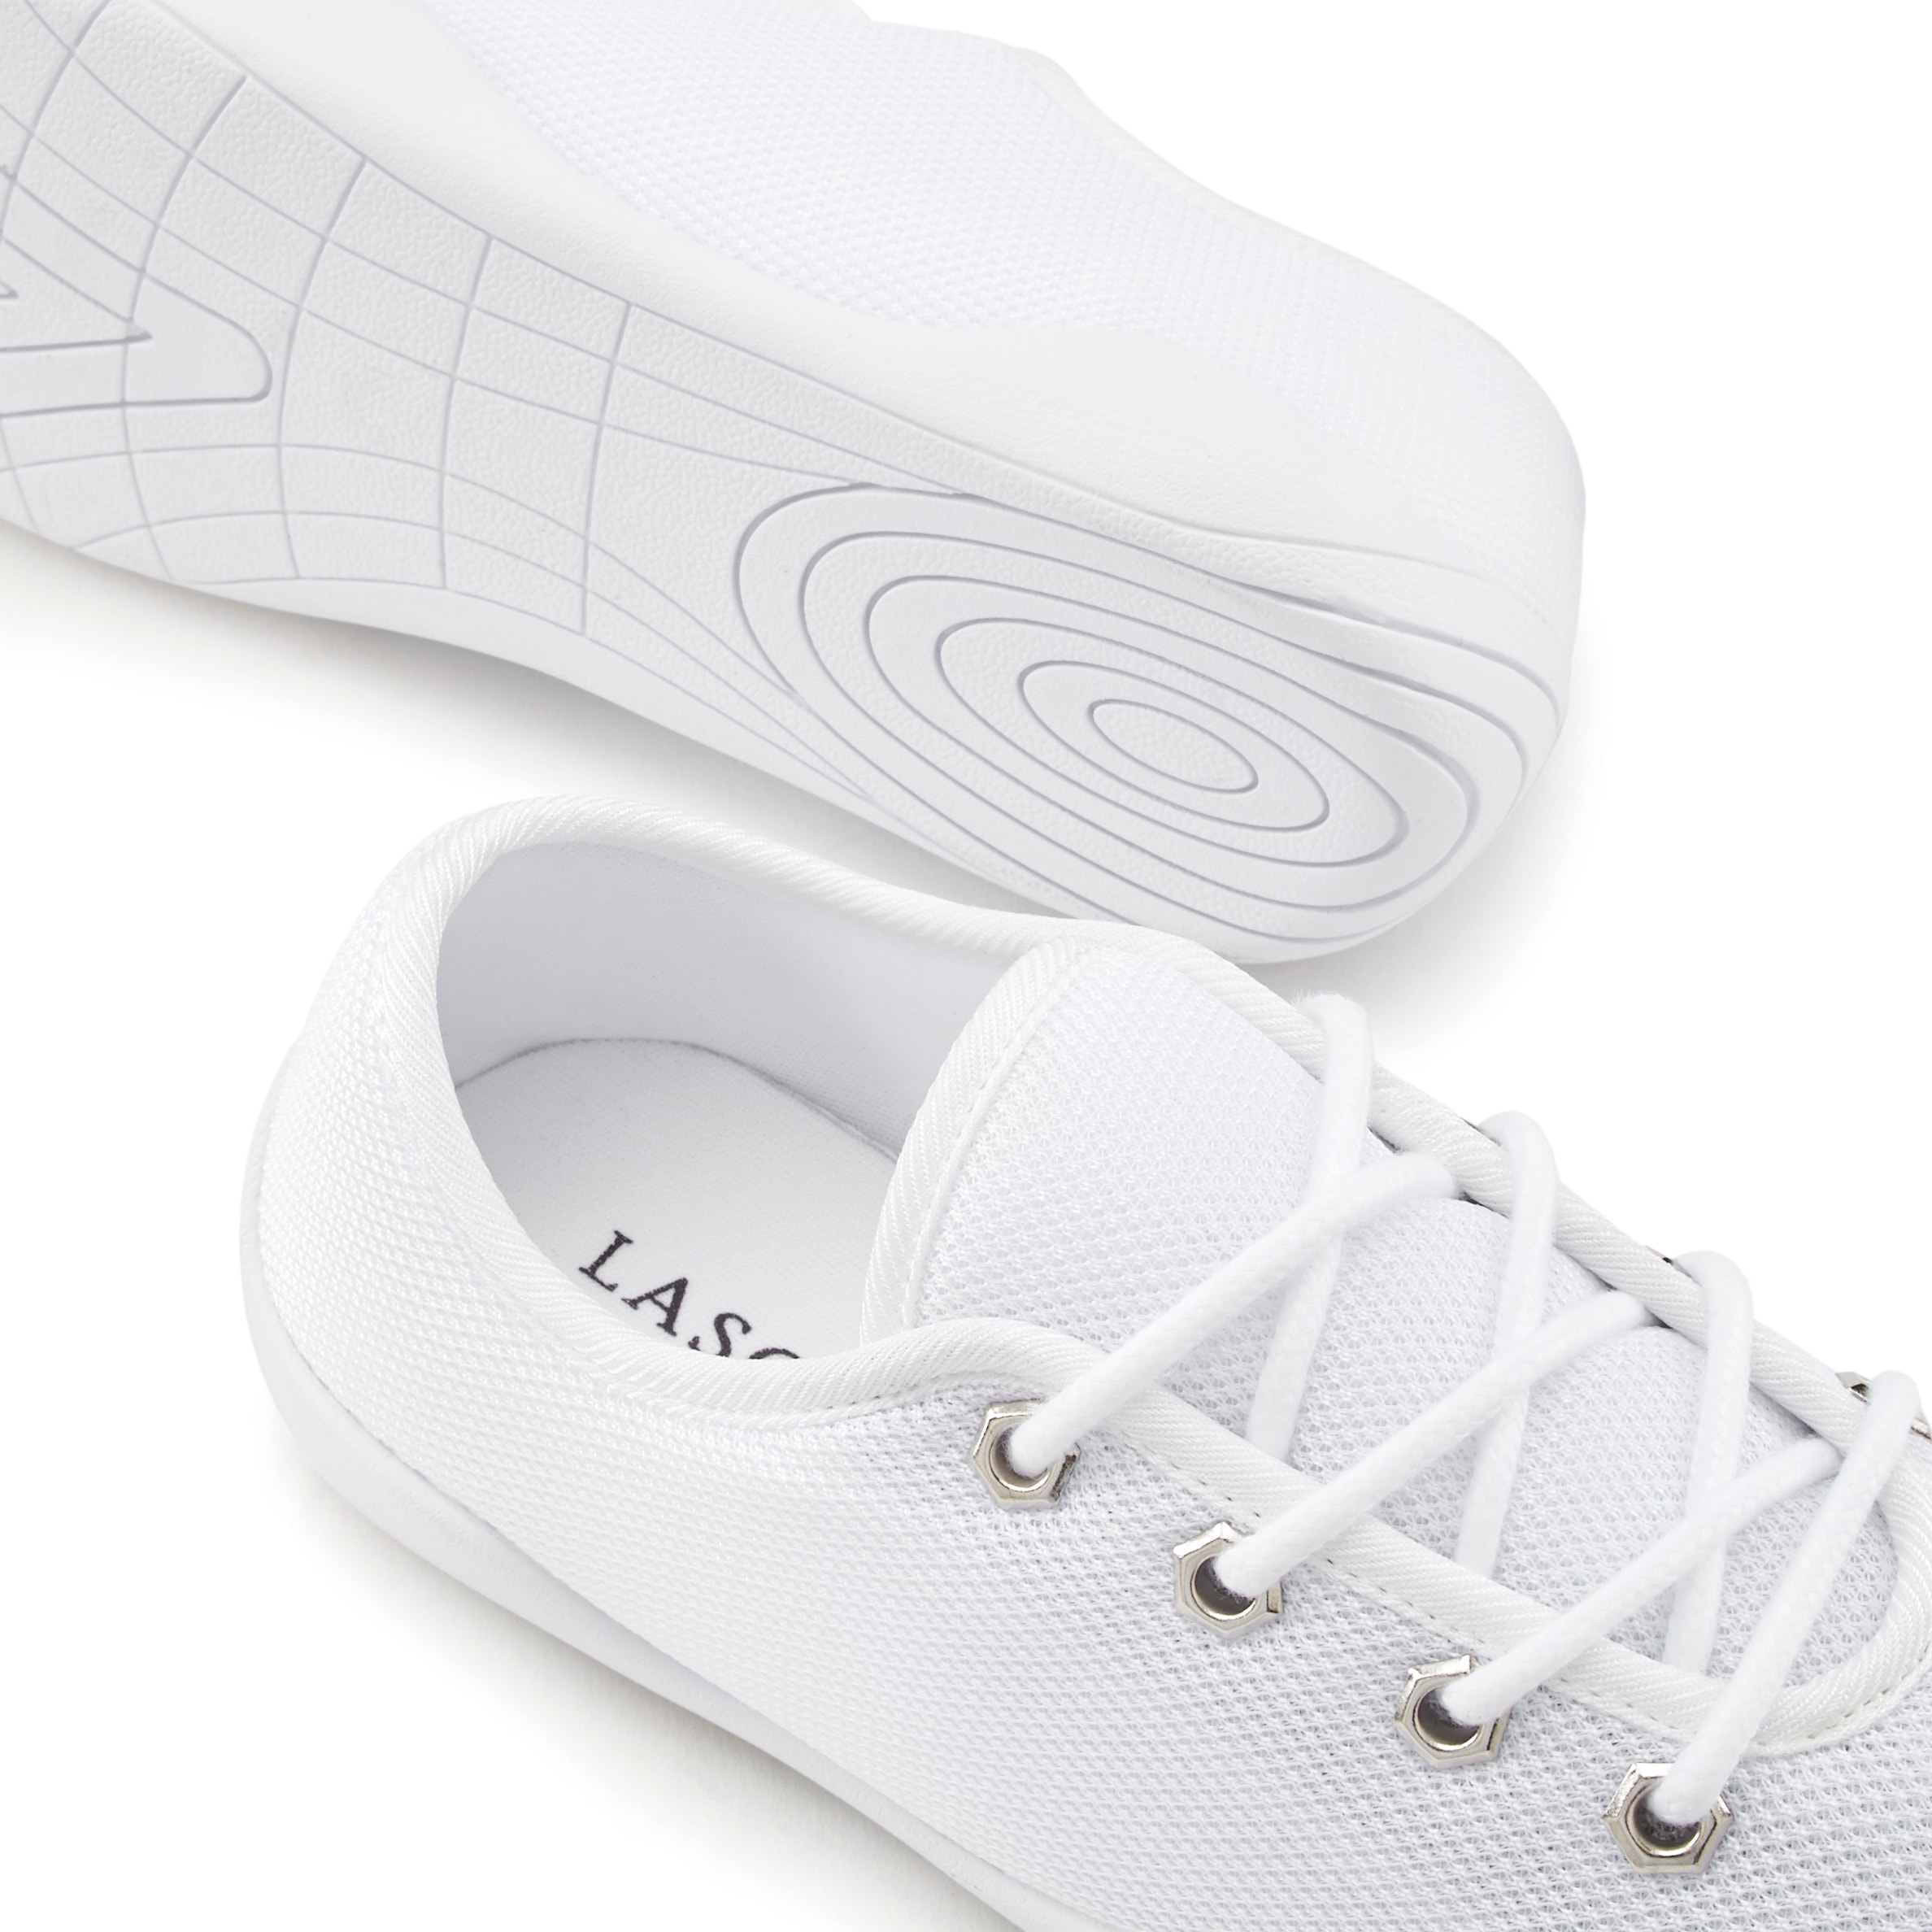 LASCANA Sneaker, mit ultraflache Sohle, superleicht, Schnürhalbschuhe, Unisex VEGAN